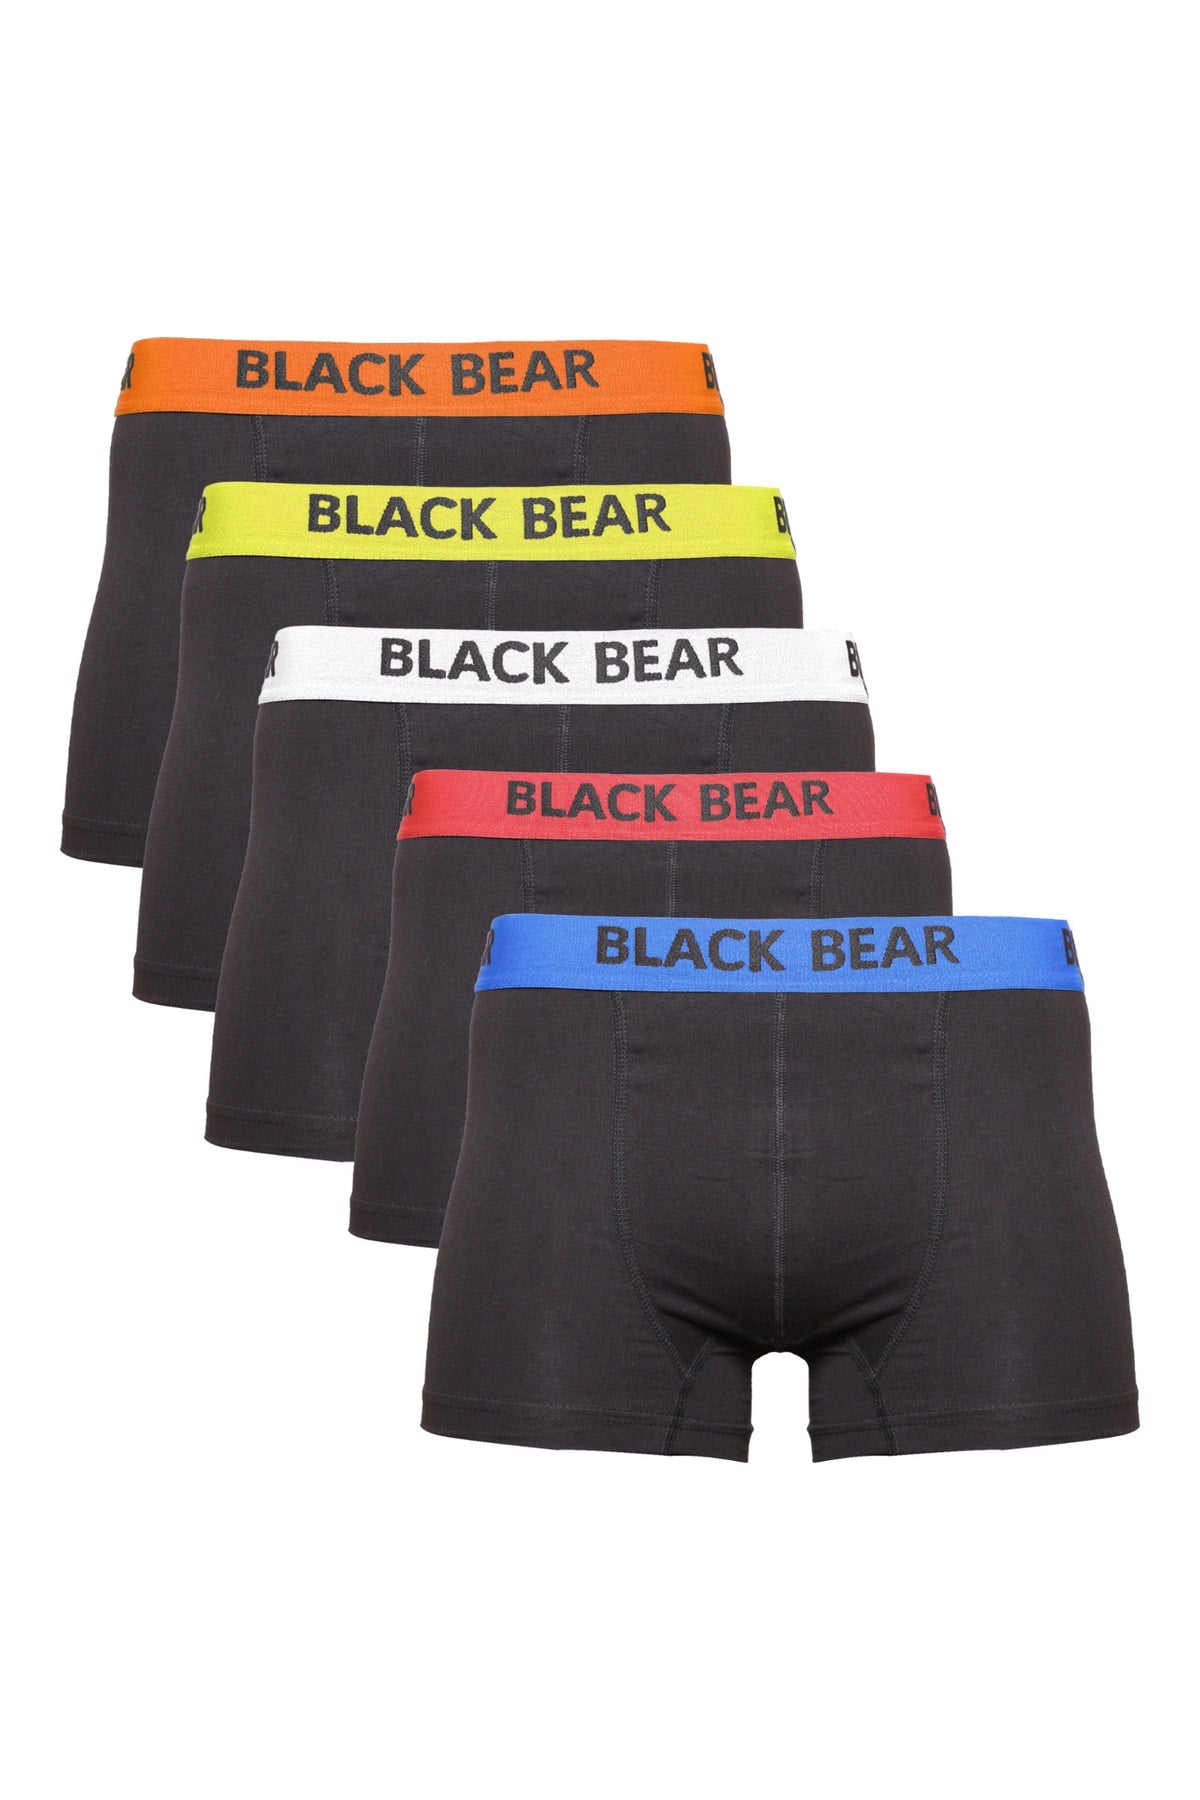 Cotton Lycra Premium Men's Boxer 5 Color Elastic Ultra Comfortable Package